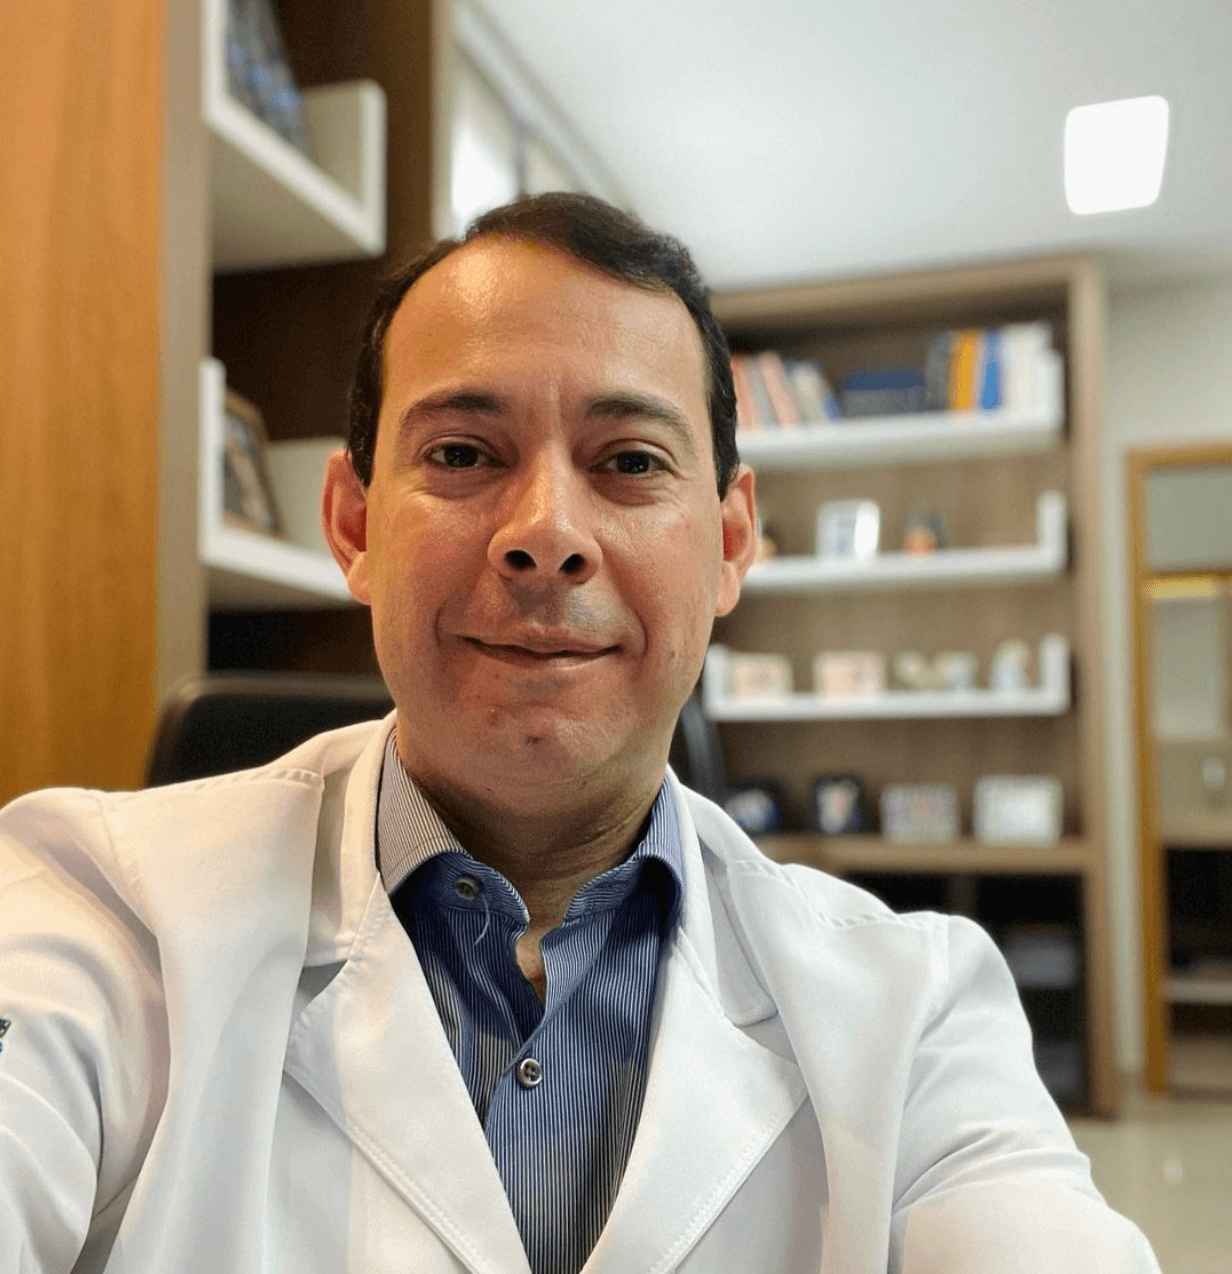 Dr. Fabiano de Oliveira